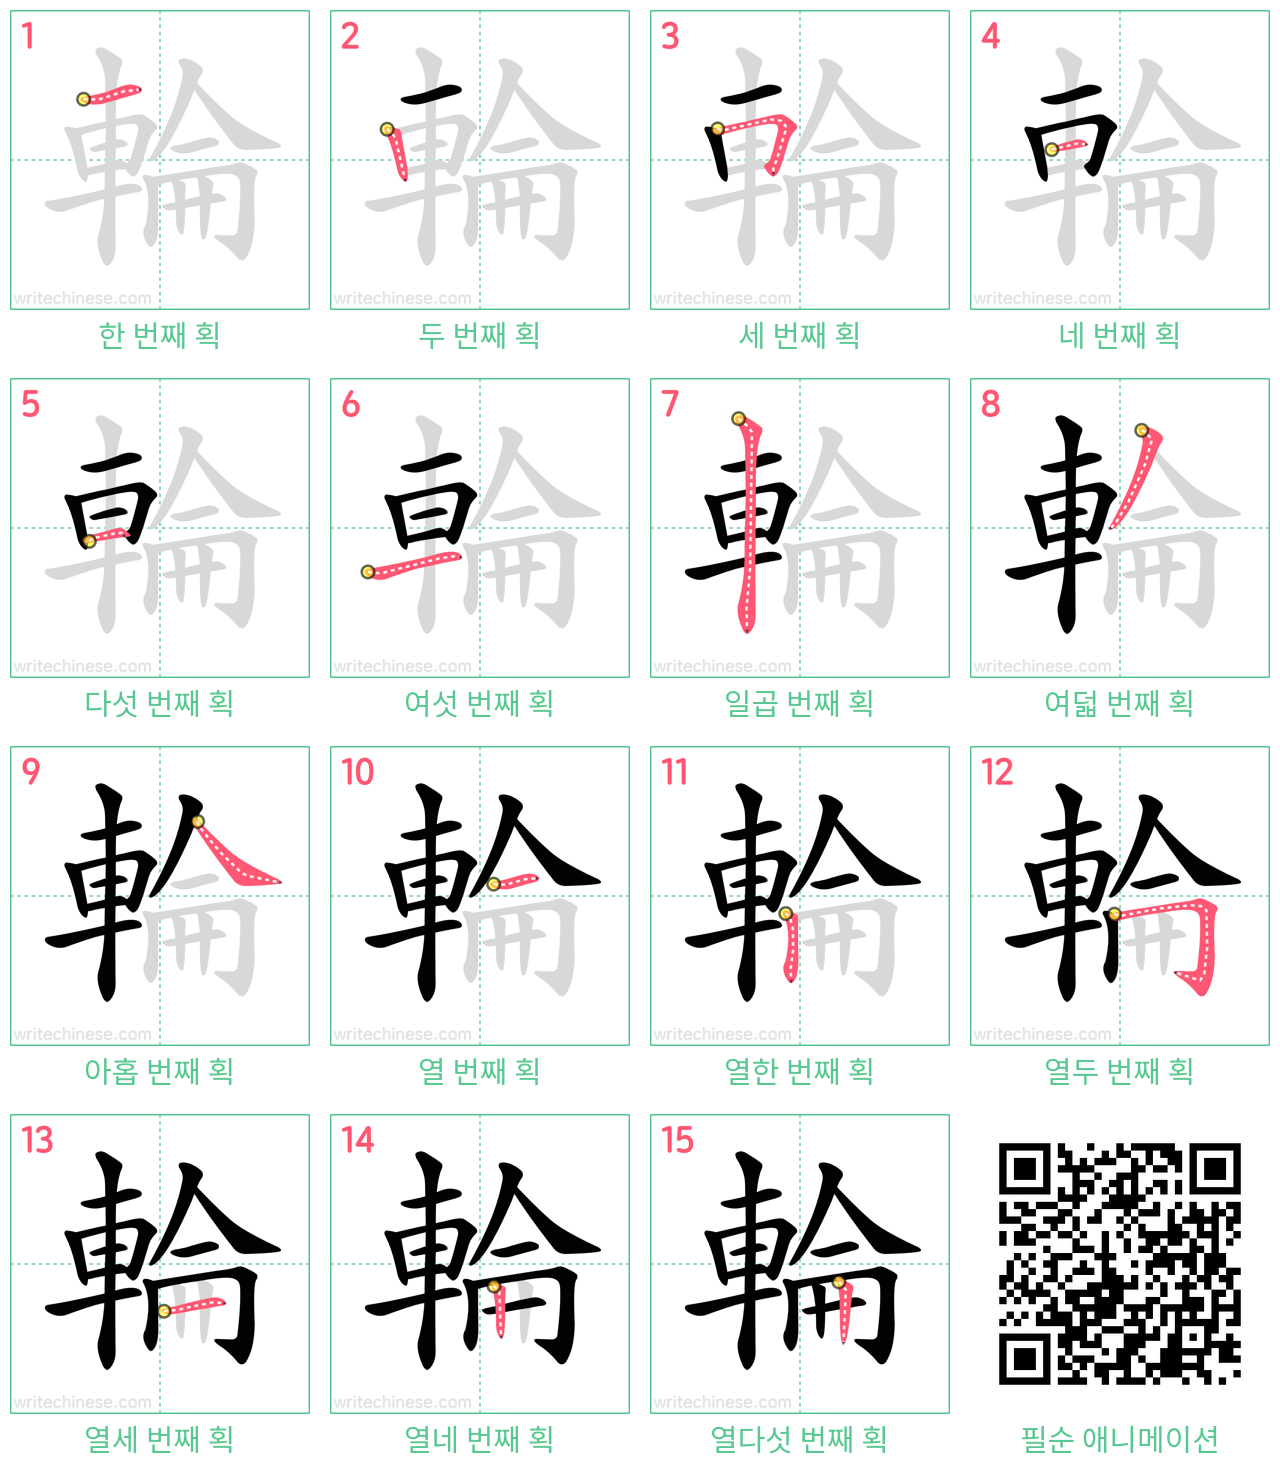 輪 step-by-step stroke order diagrams